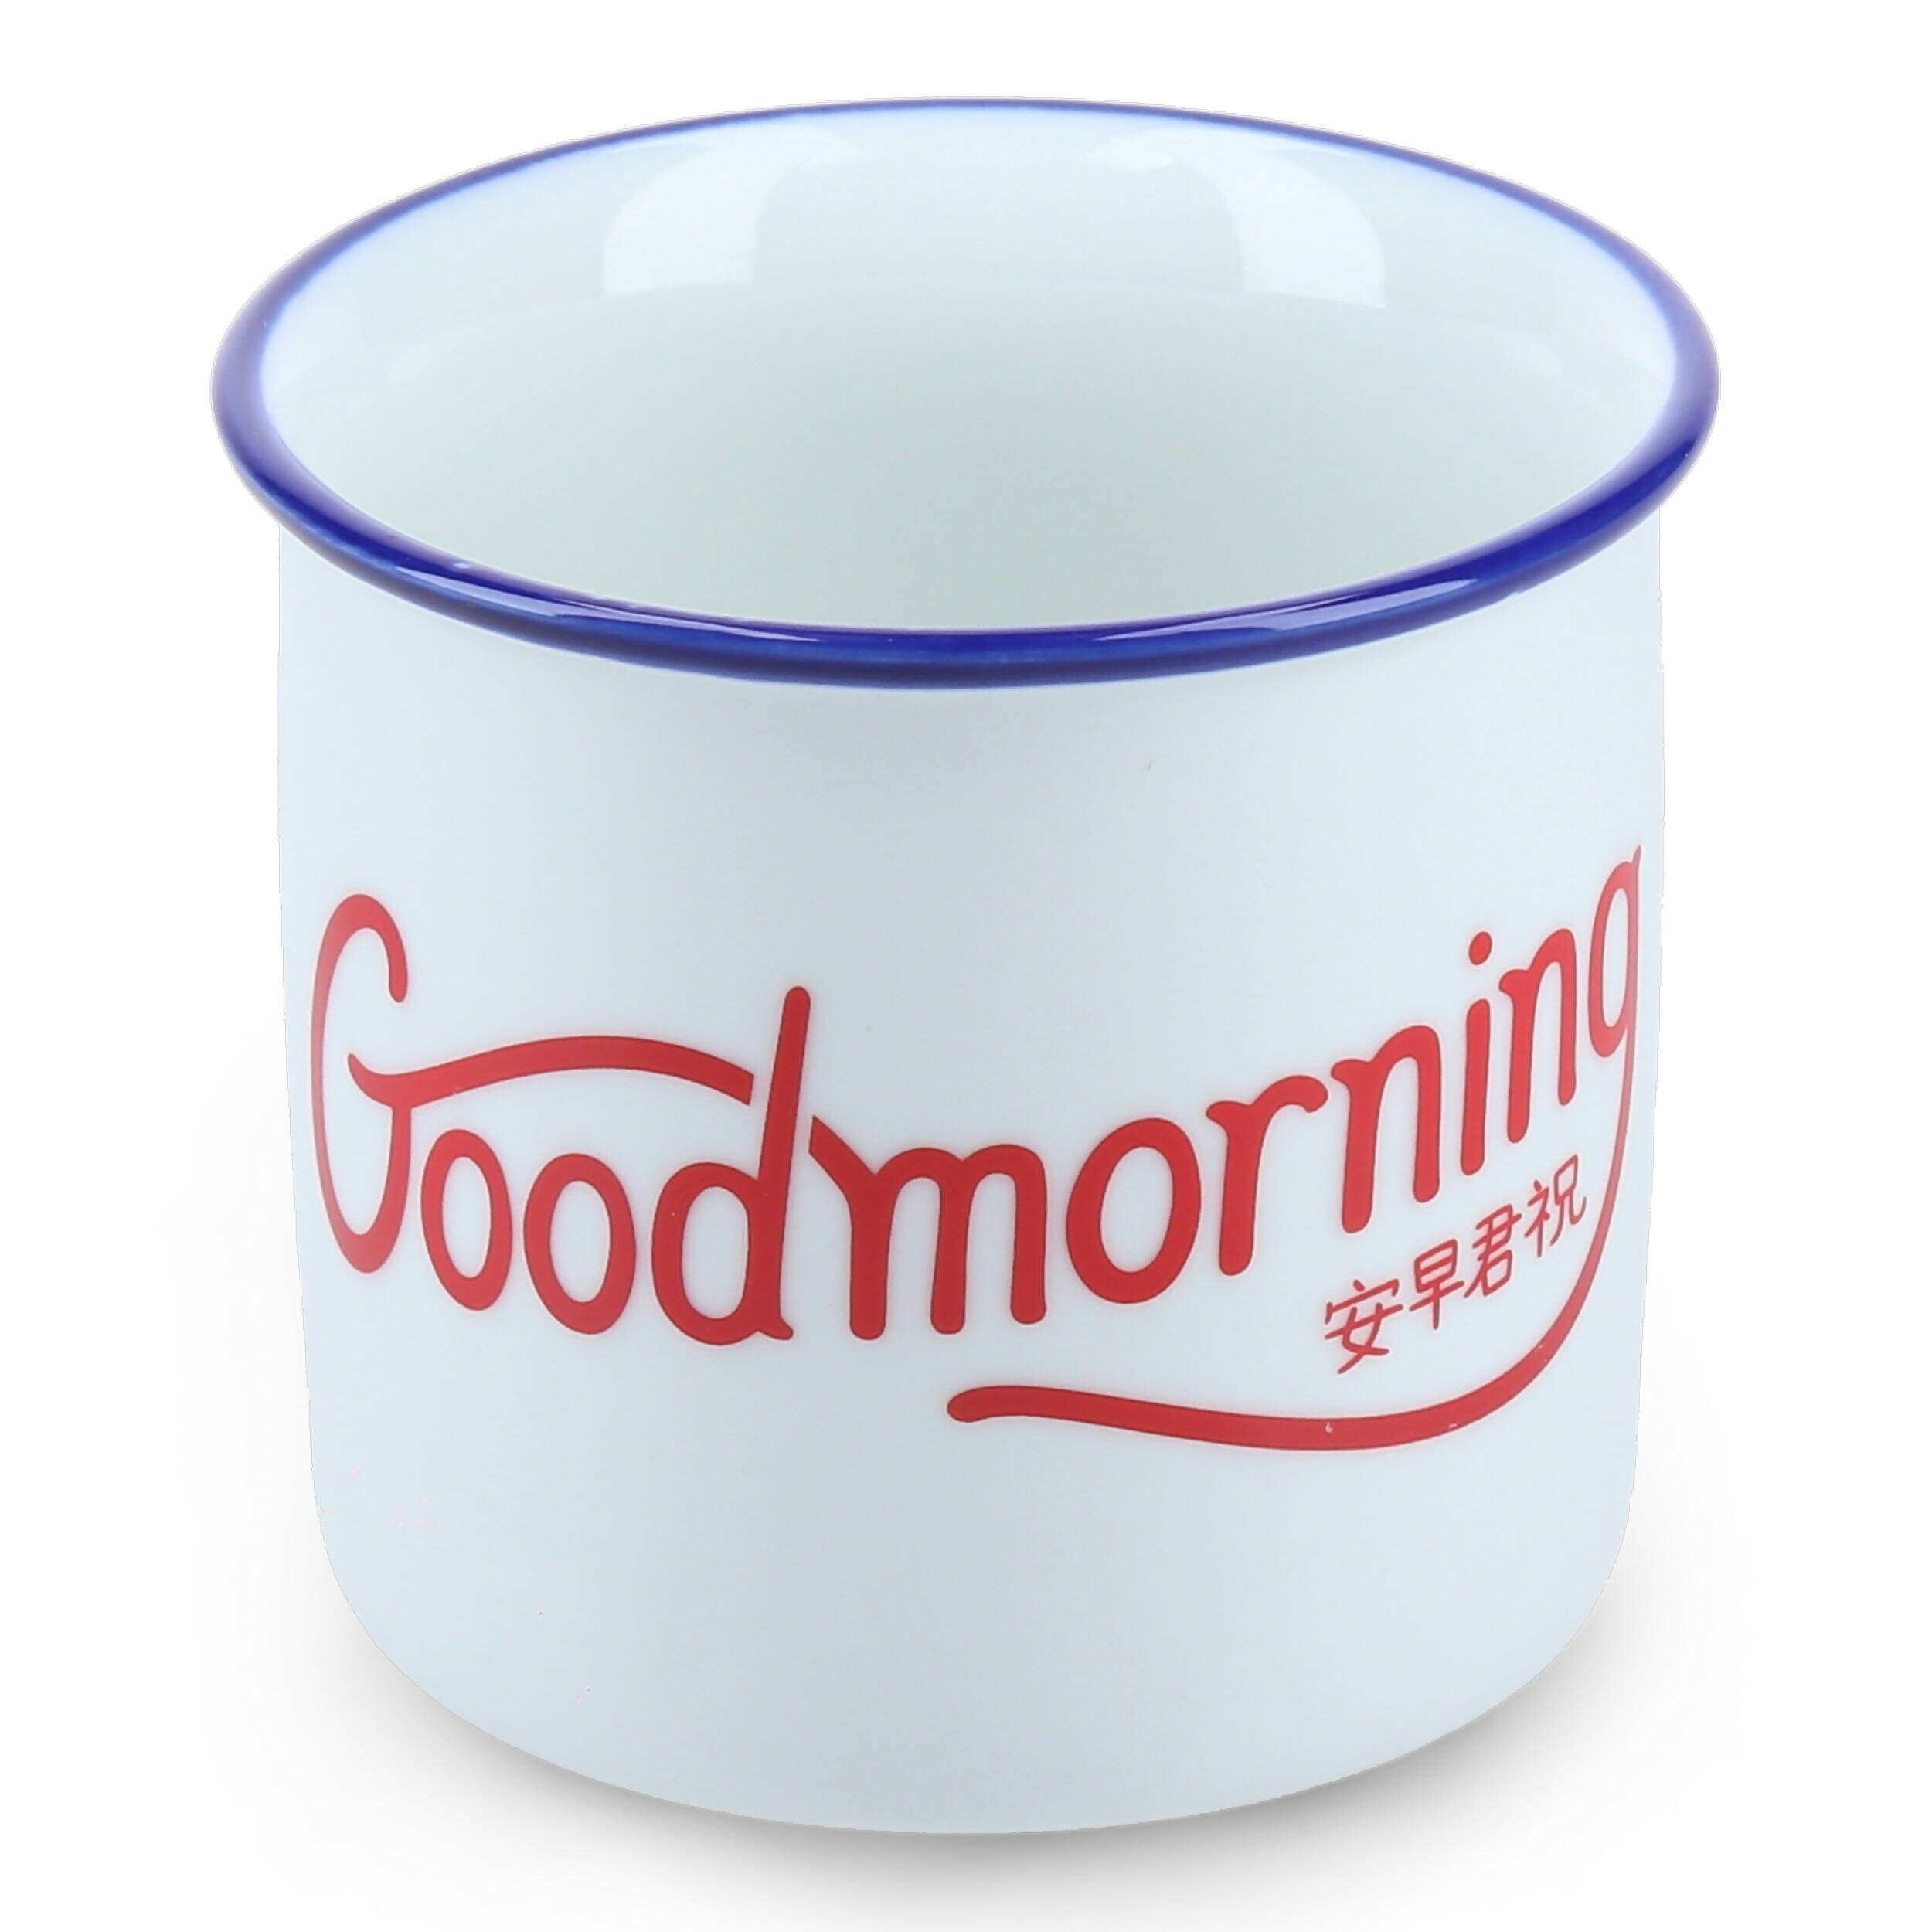 [Nom] Good Morning Mug Local Mugs Nom.sg 